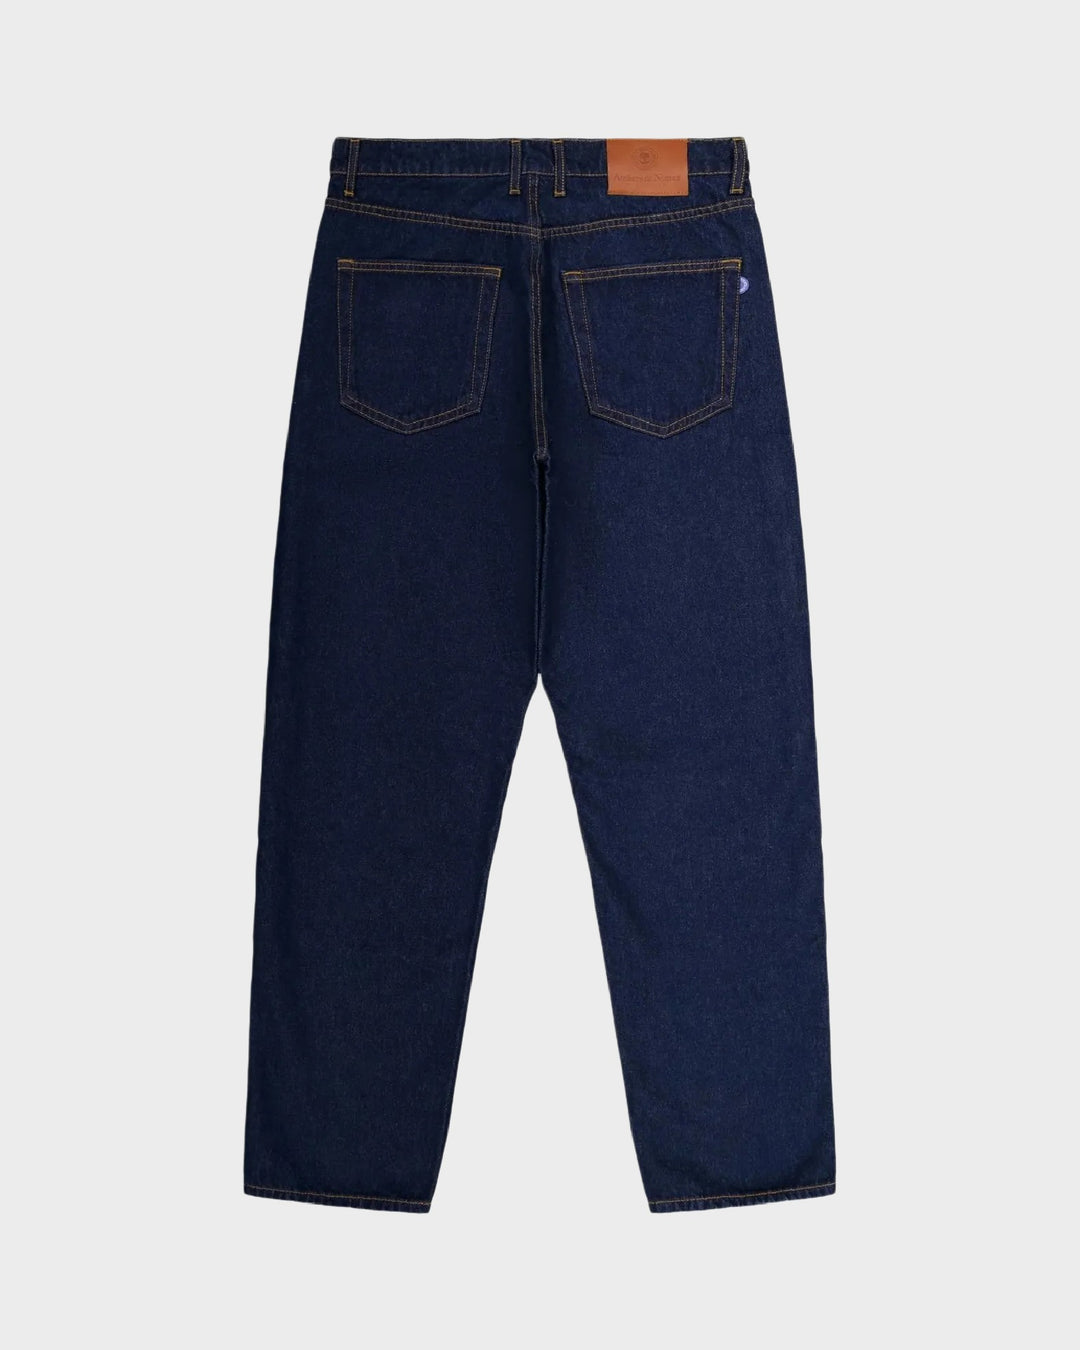 Jeans DN.10 ample Un lavage